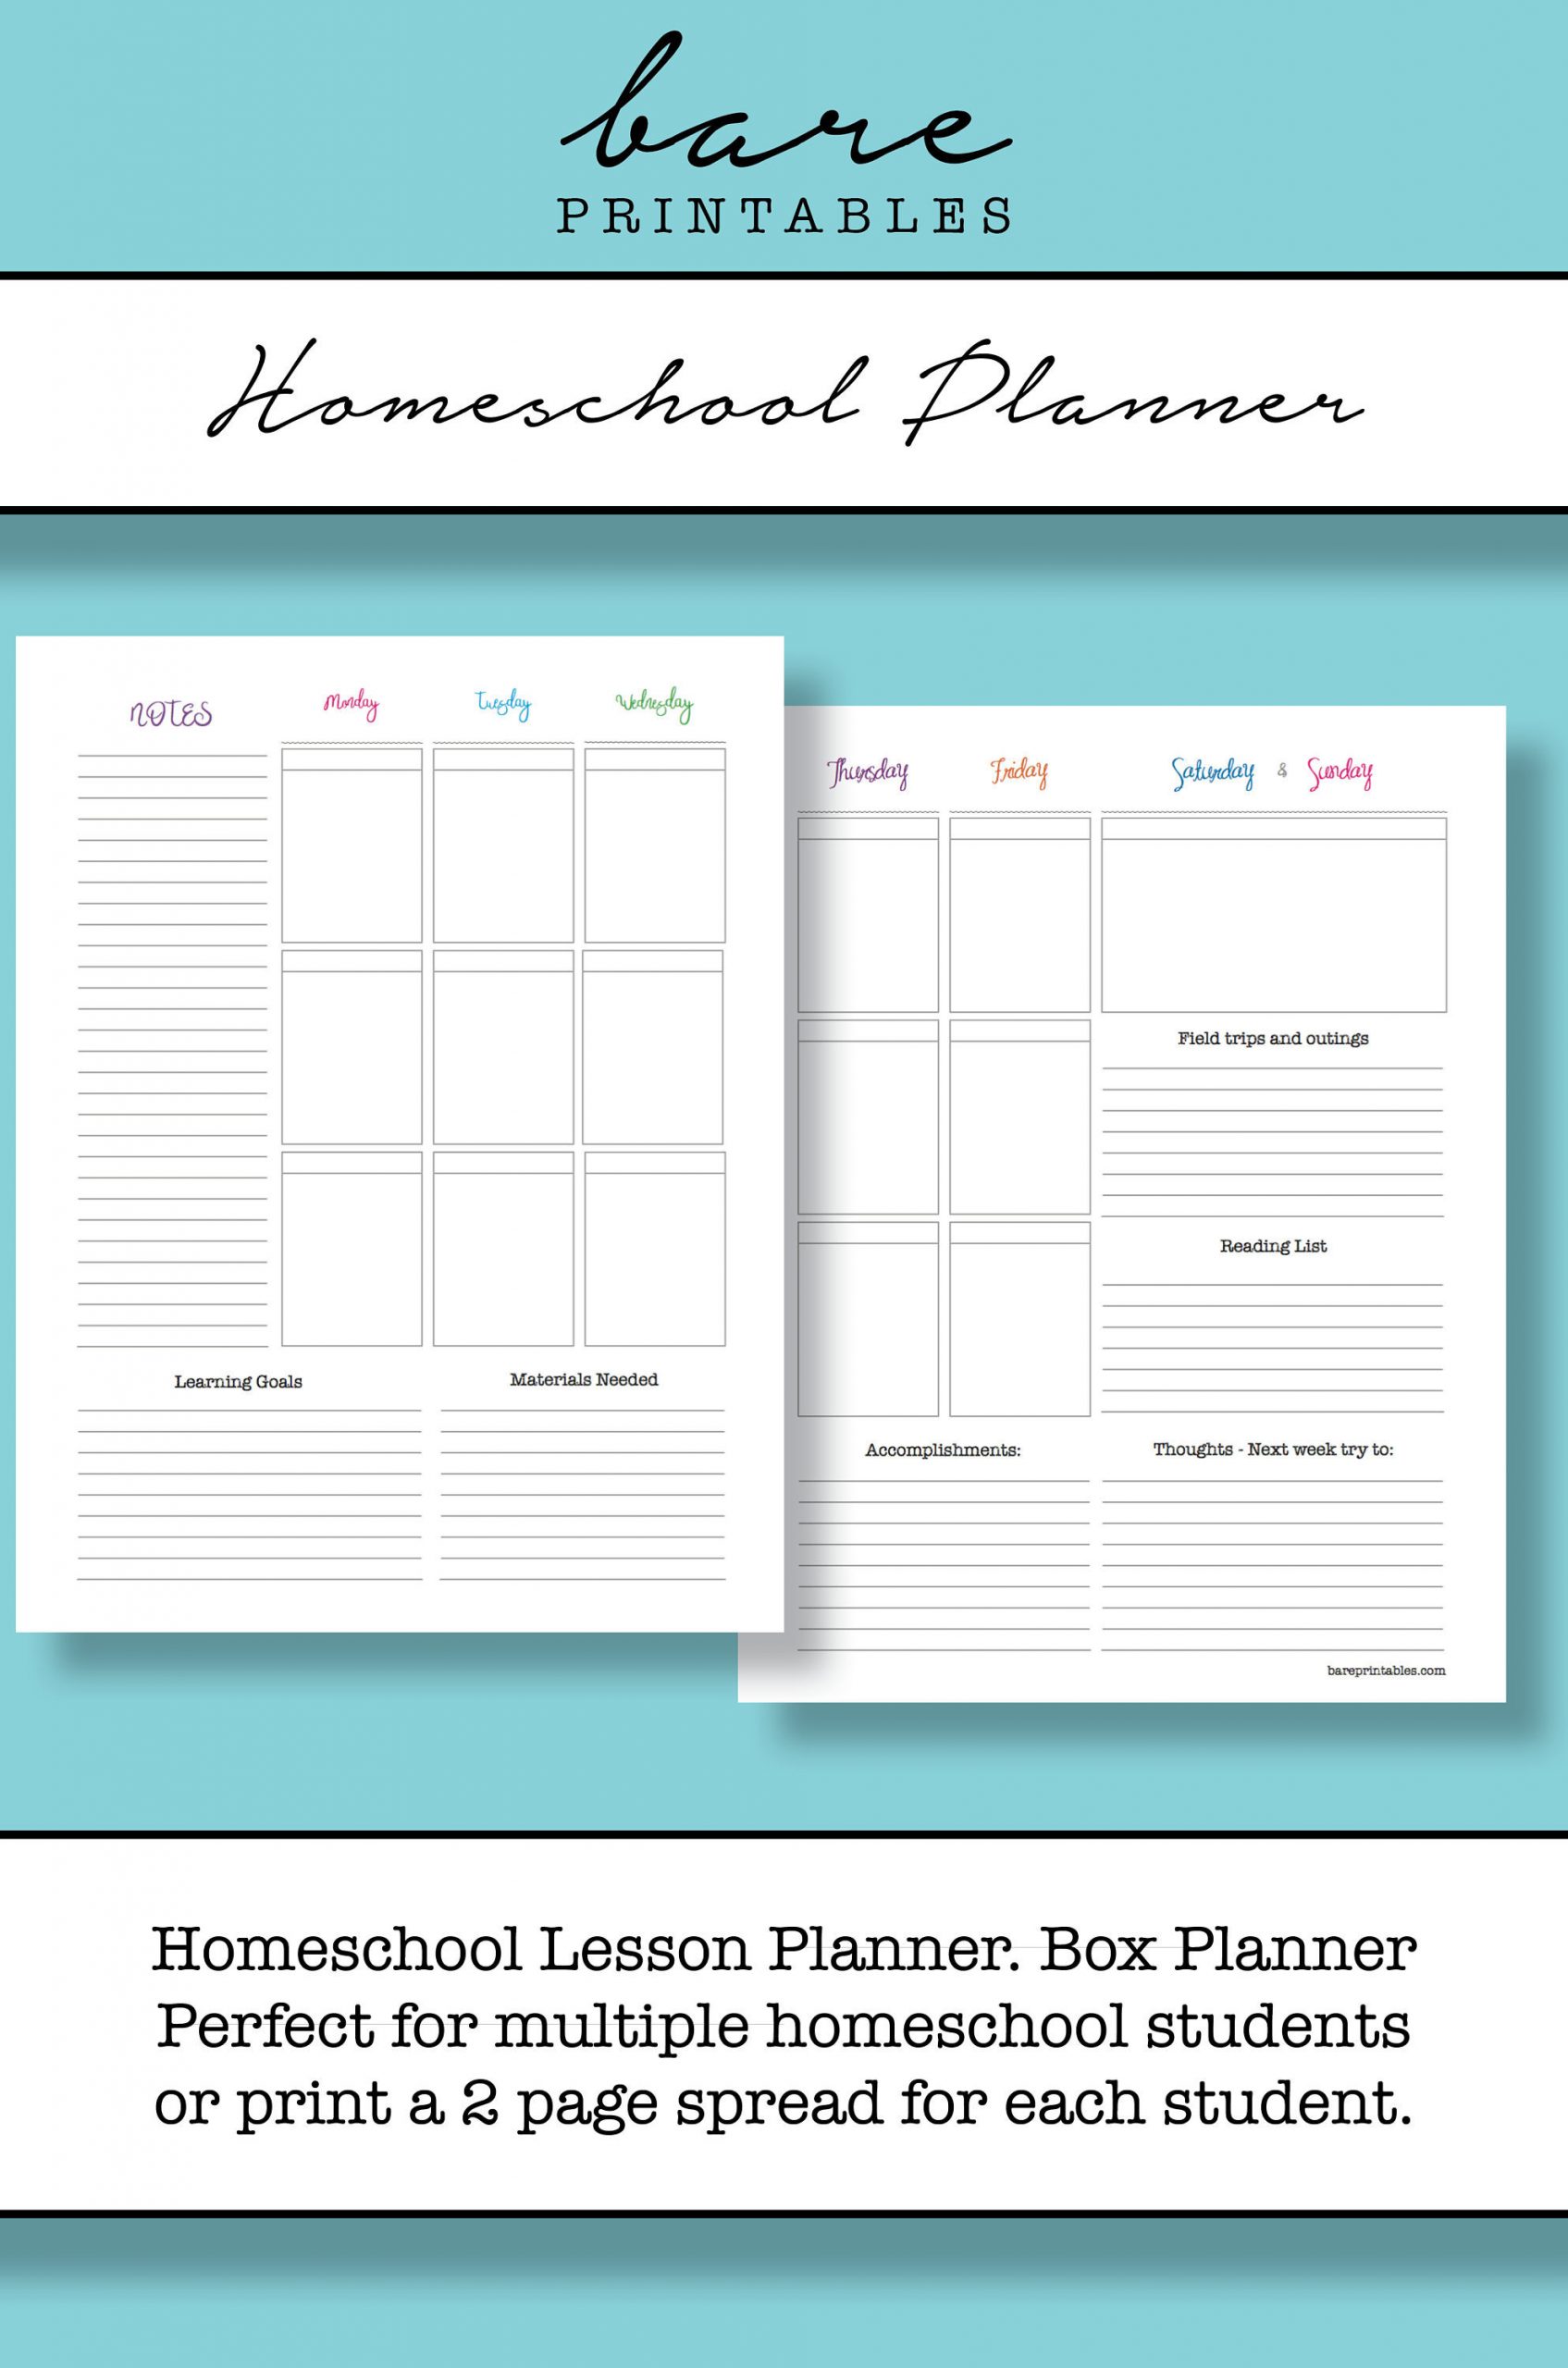 Homeschool Lesson Planner Homeschool Lesson Planner Weekly Box Planner Printable